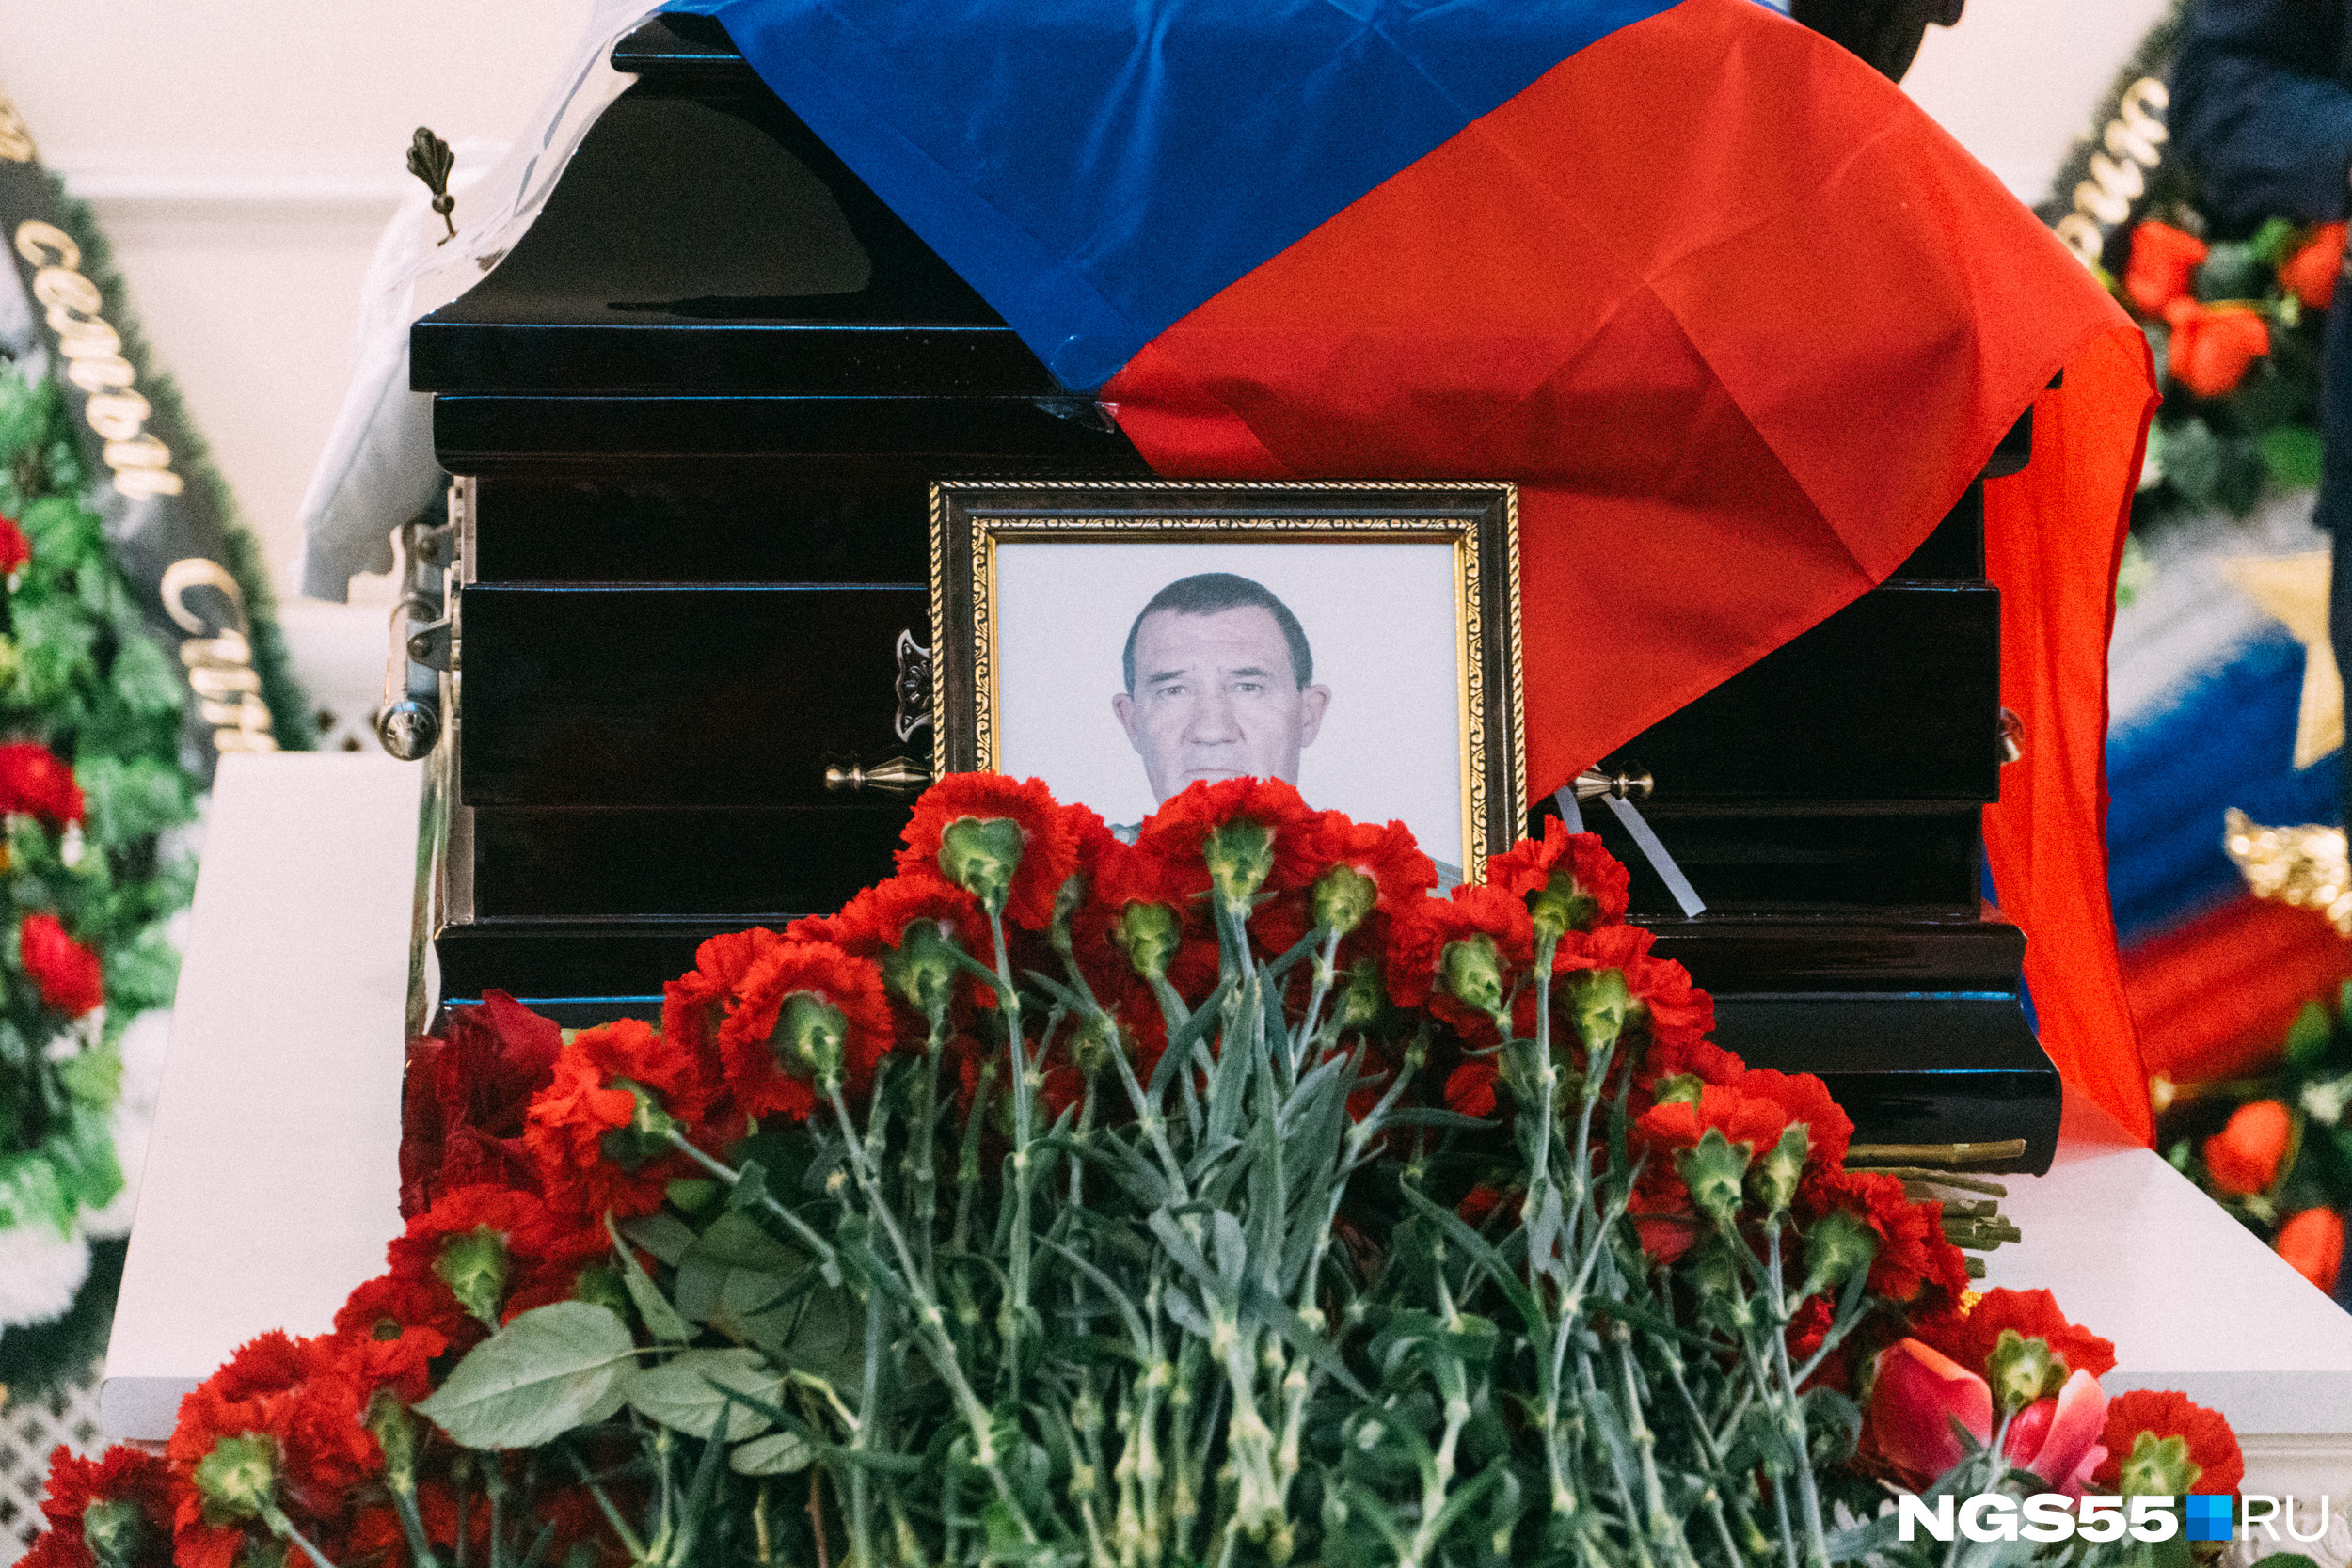 Похоронен в украине. В Омске похоронили погибших на Украине.